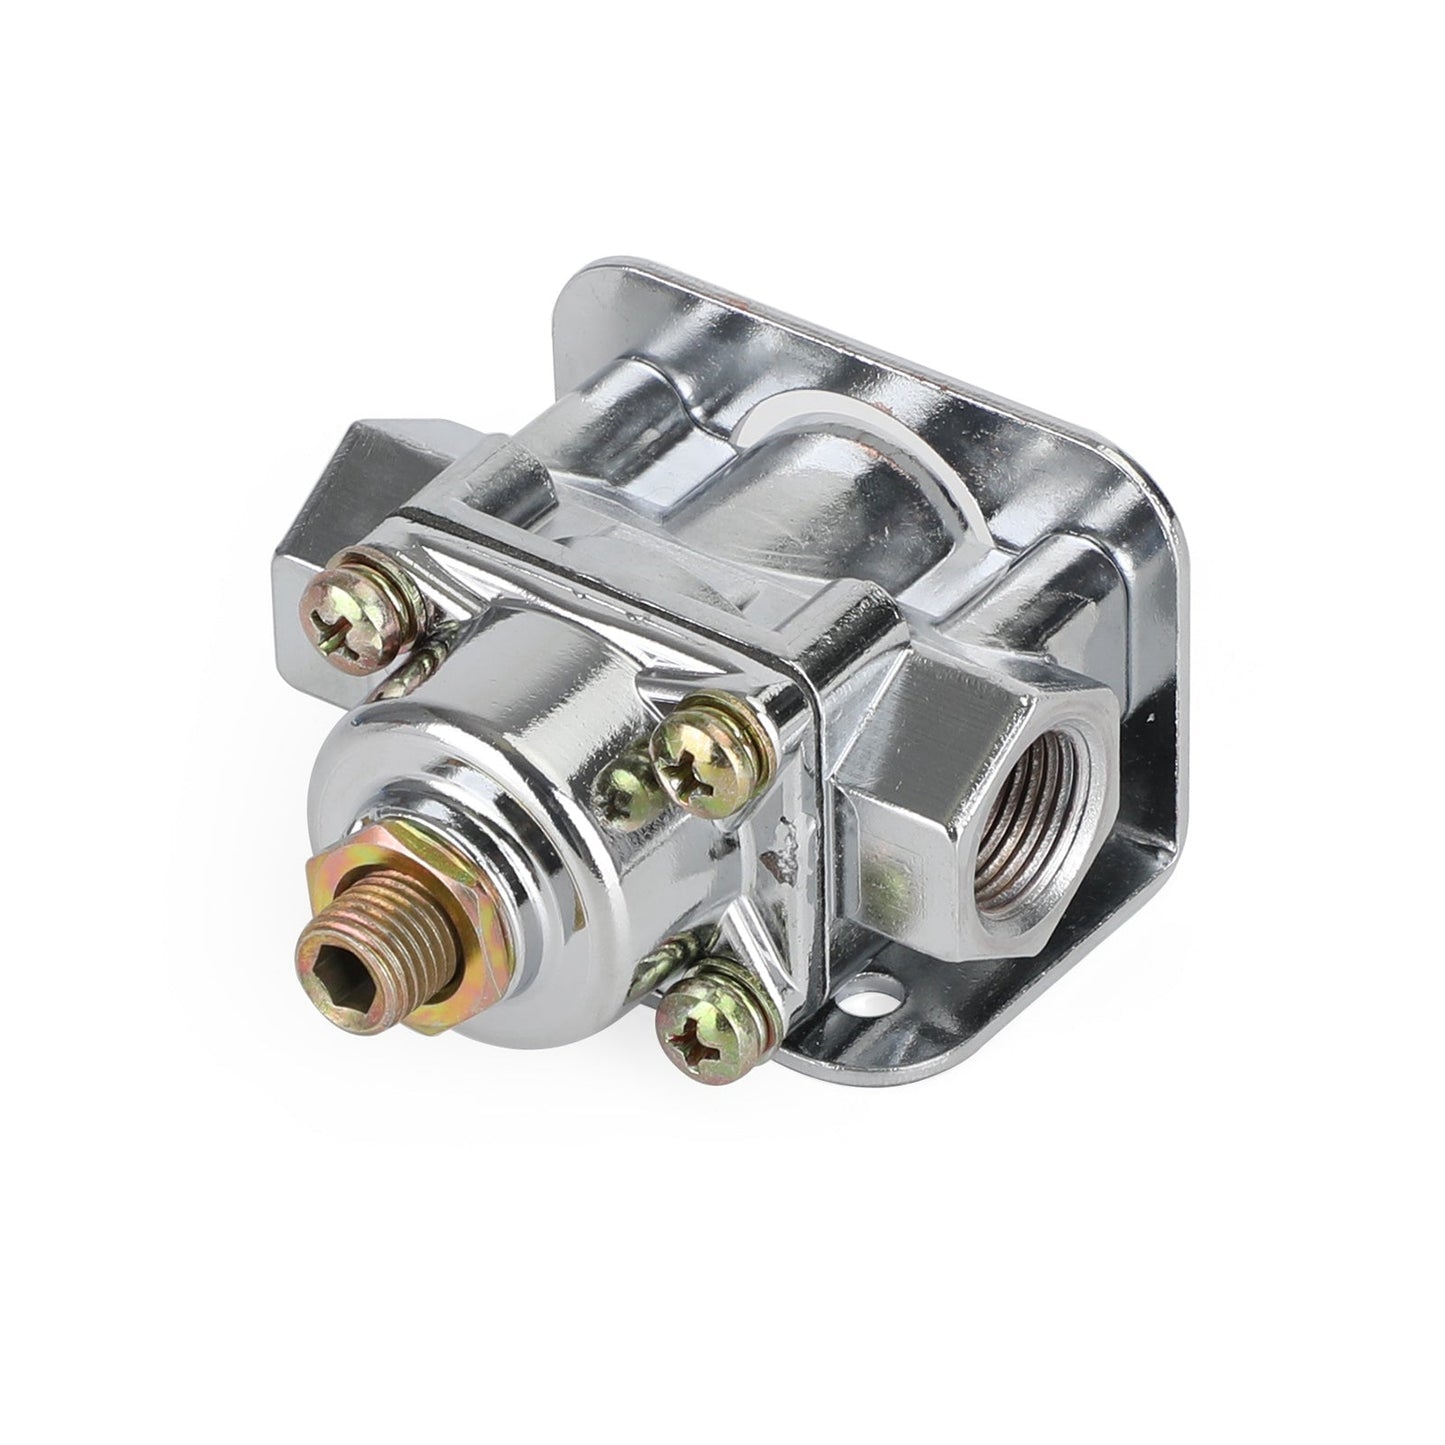 Carburetor Fuel Pressure Regulator For Holley 12-803 2 Port 4 1/2 to 9 PSI